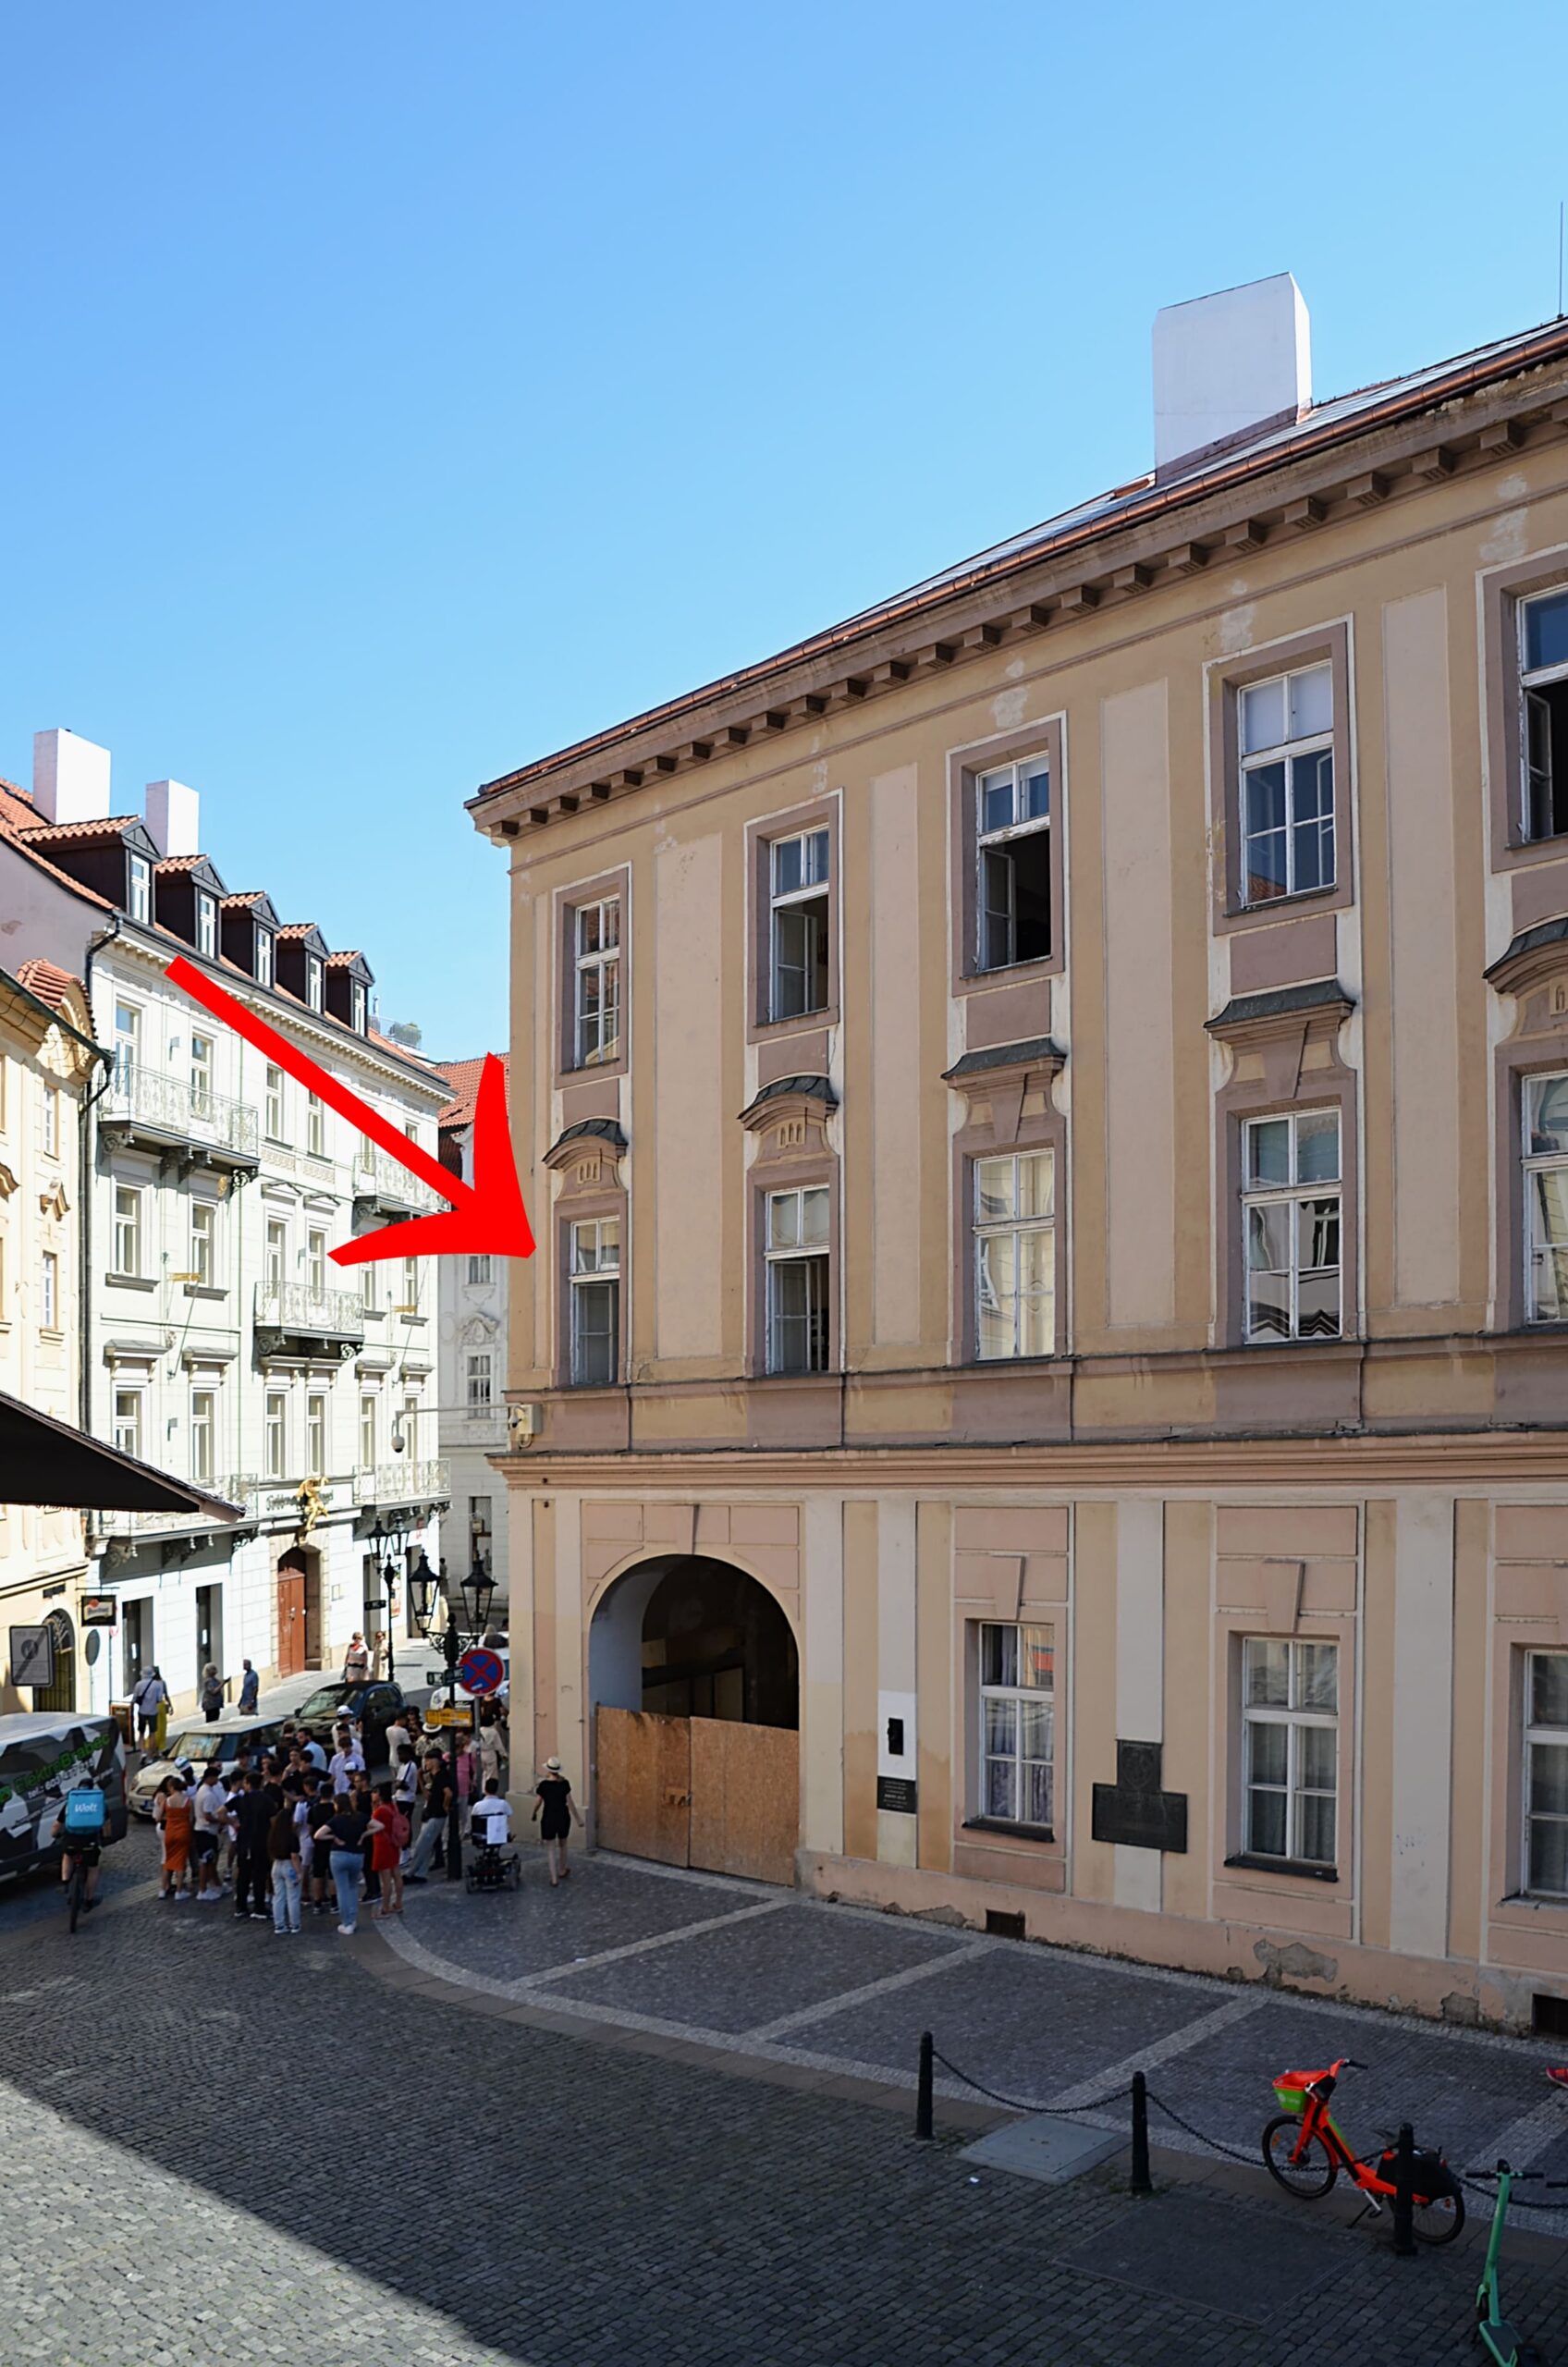 Do okna naznačeného šipkou přilétla kulka, vystřelená na tuto část paláce, která zabila kněžnu Windischgrätzovou, i když možná byla určena jejímu manželovi. (Foto: Miloslav Čech)